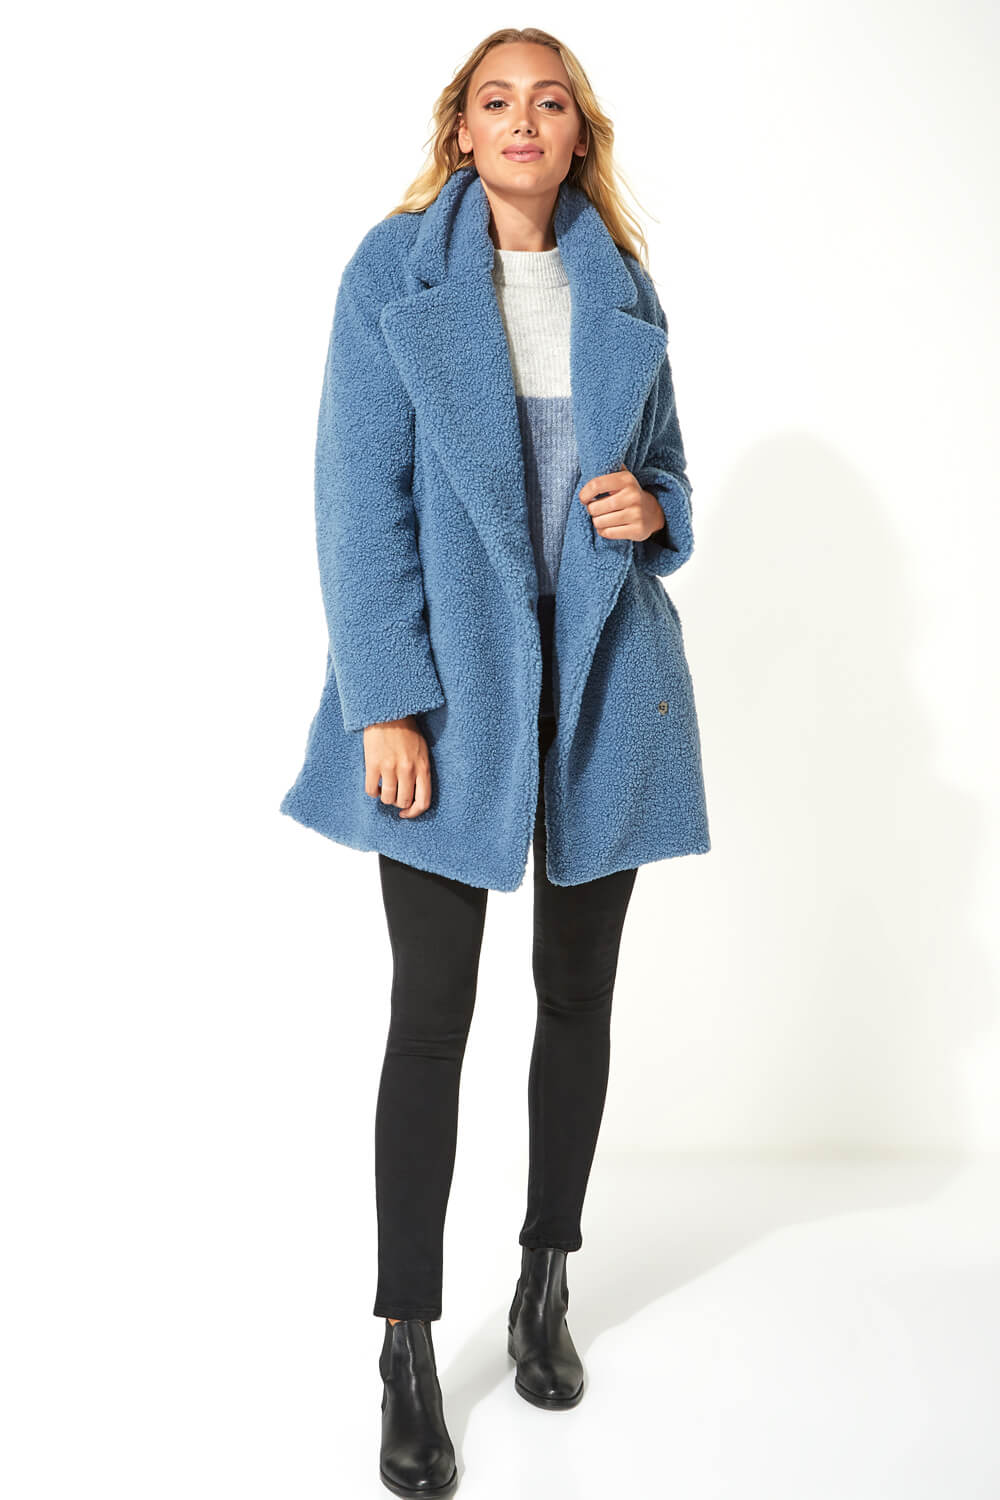 Longline Soft Faux Fur Teddy Coat in Steel Blue - Roman Originals UK